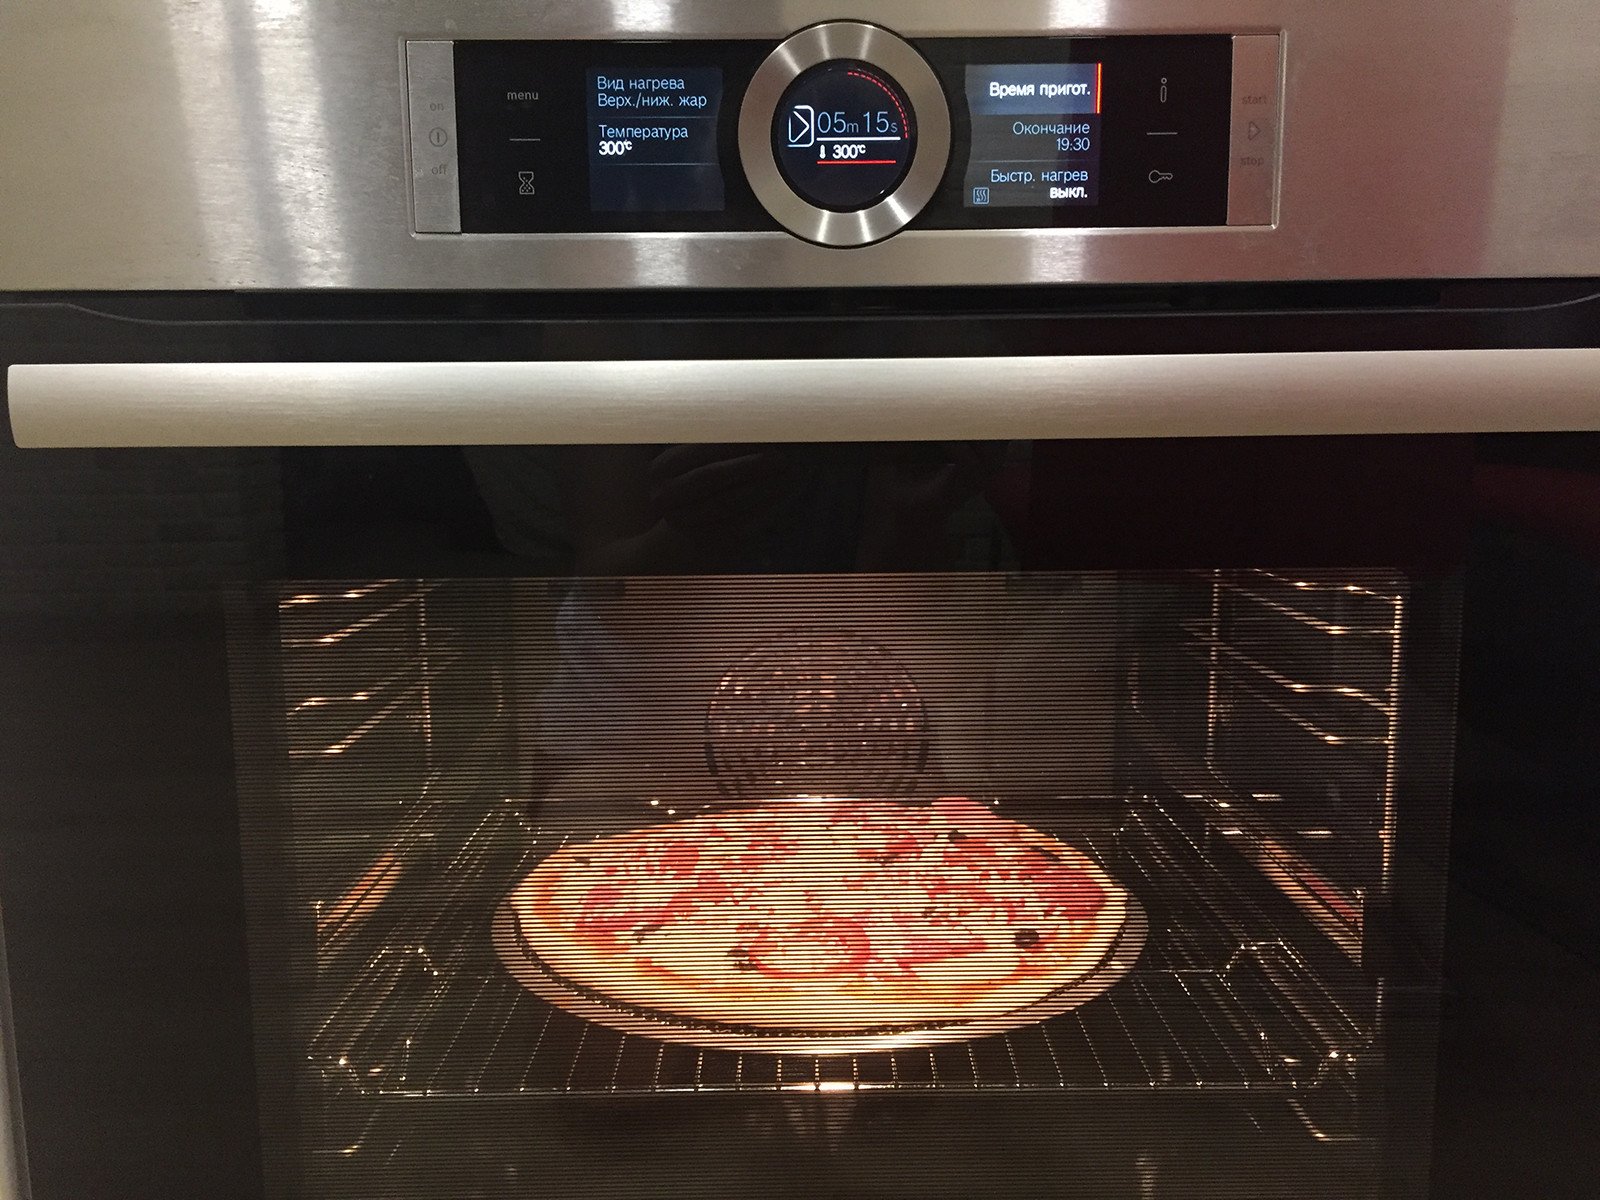 Пицца какая температура в духовке и время. Пицца в духовке. Круглая пицца в духовке. Печь для пиццы электрическая. Духовой шкаф для приготовления пиццы.